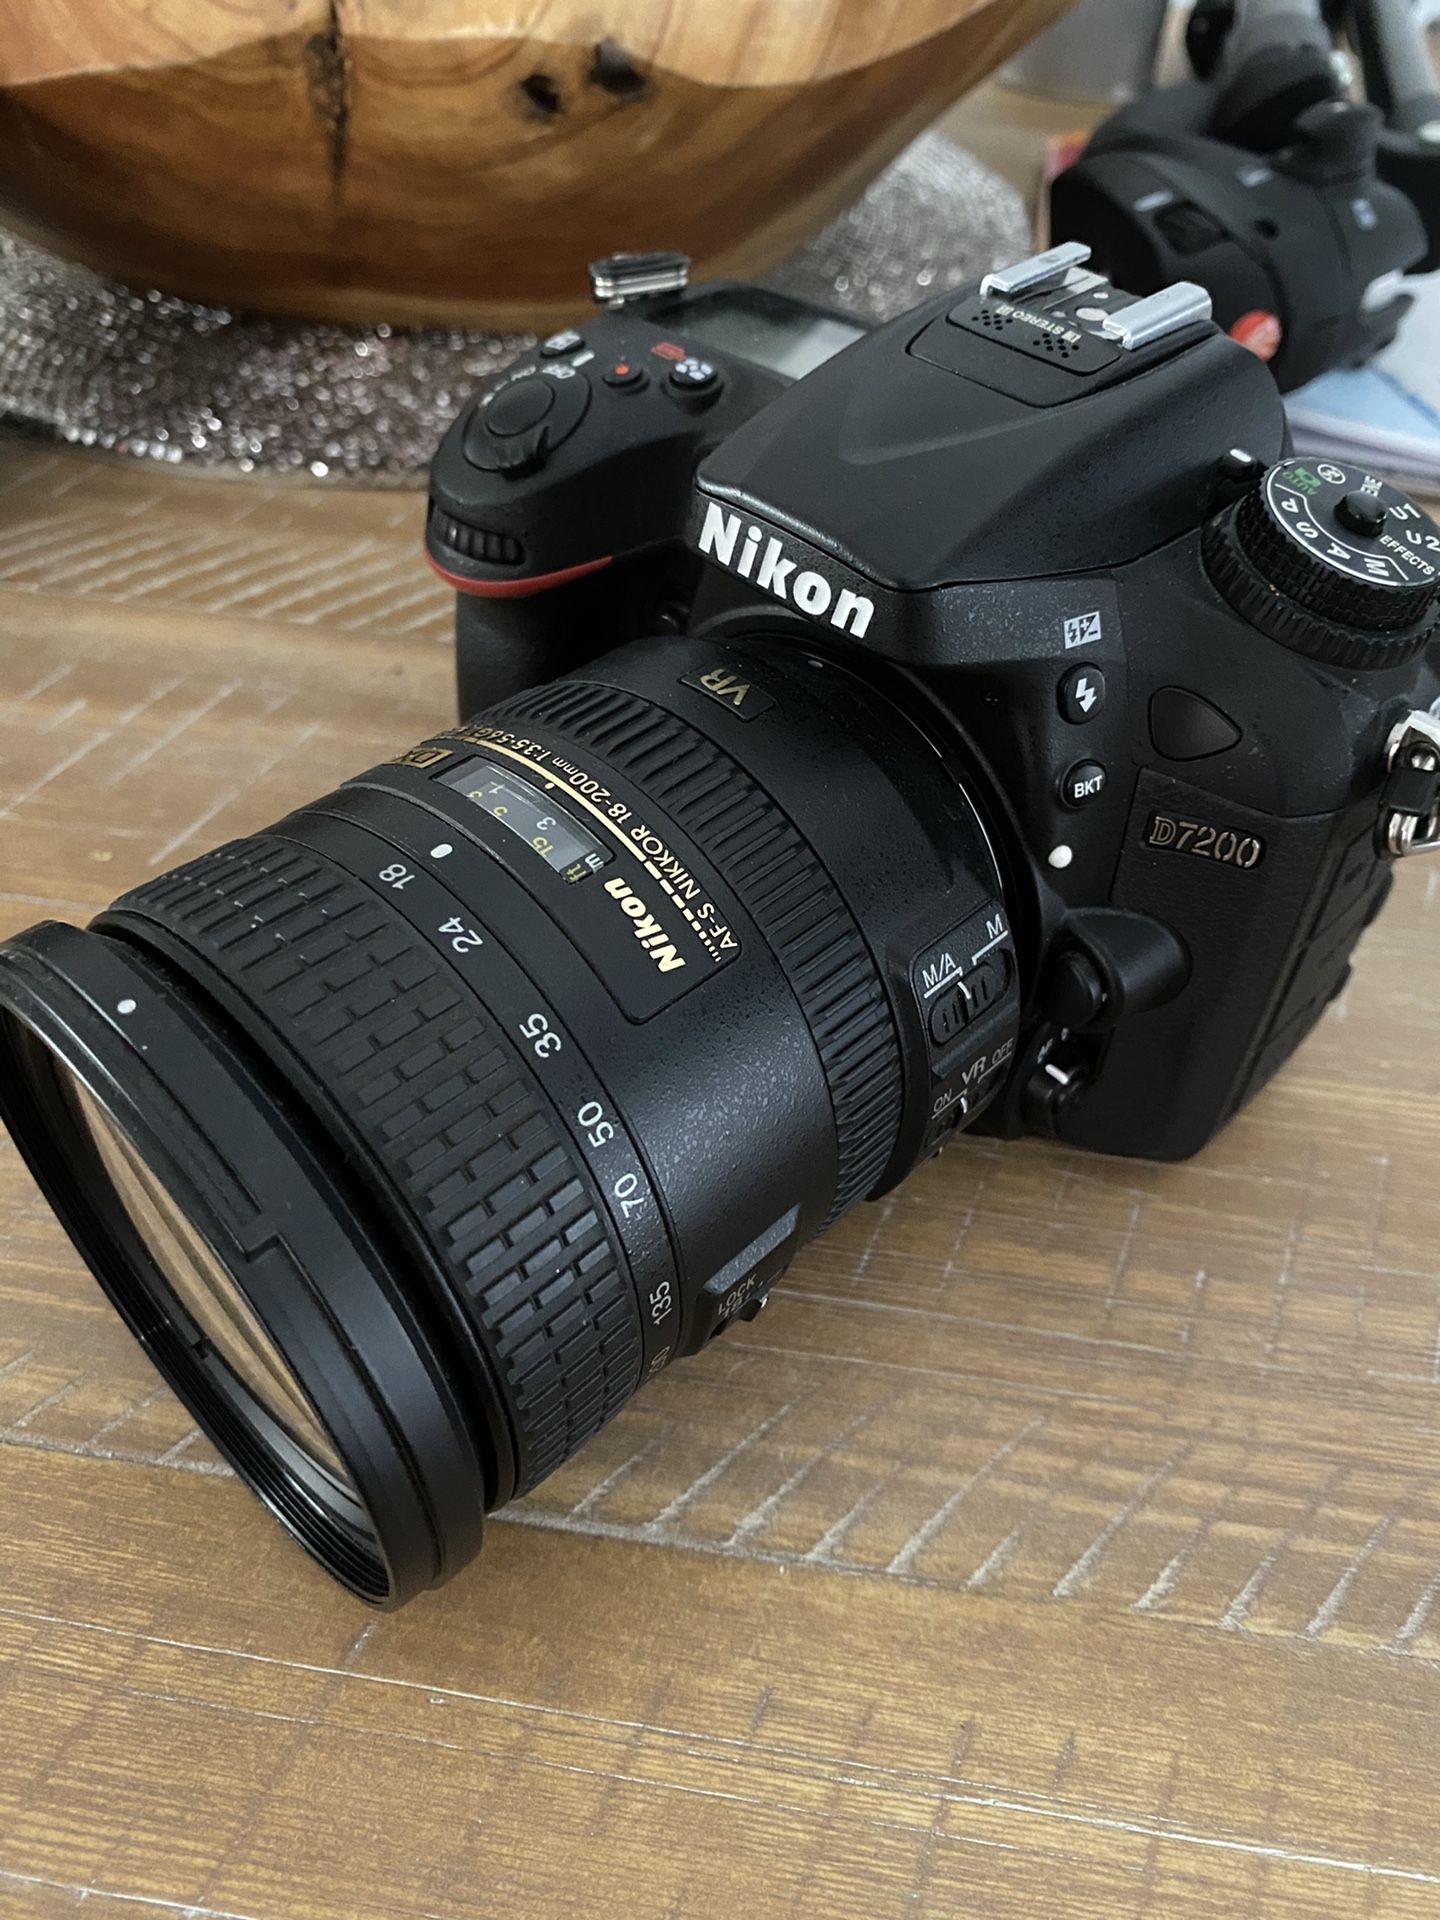 Nikon D7200 used